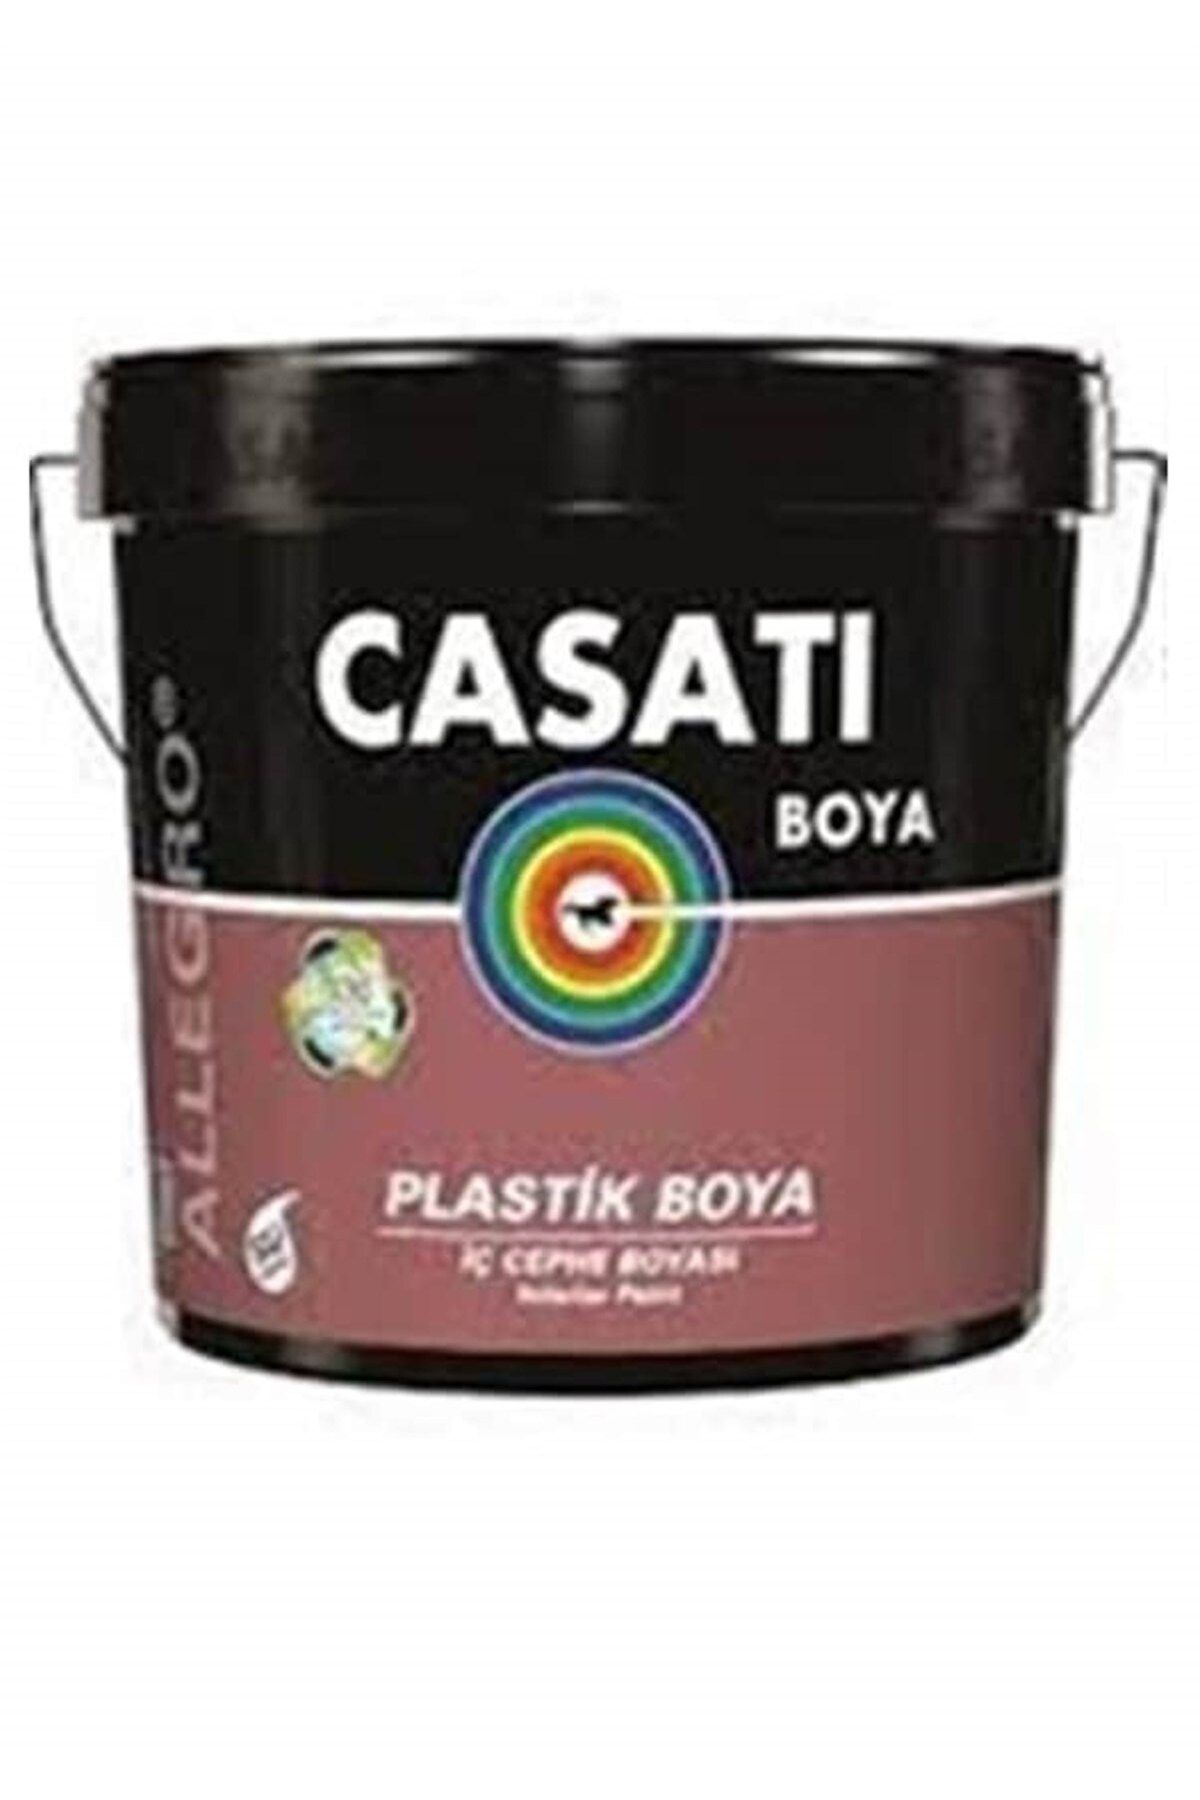 Casati Dyo Casati Allegro Plastik Iç Cephe Duvar Boyası 20 Kg Tüm Renkler Mevcuttur